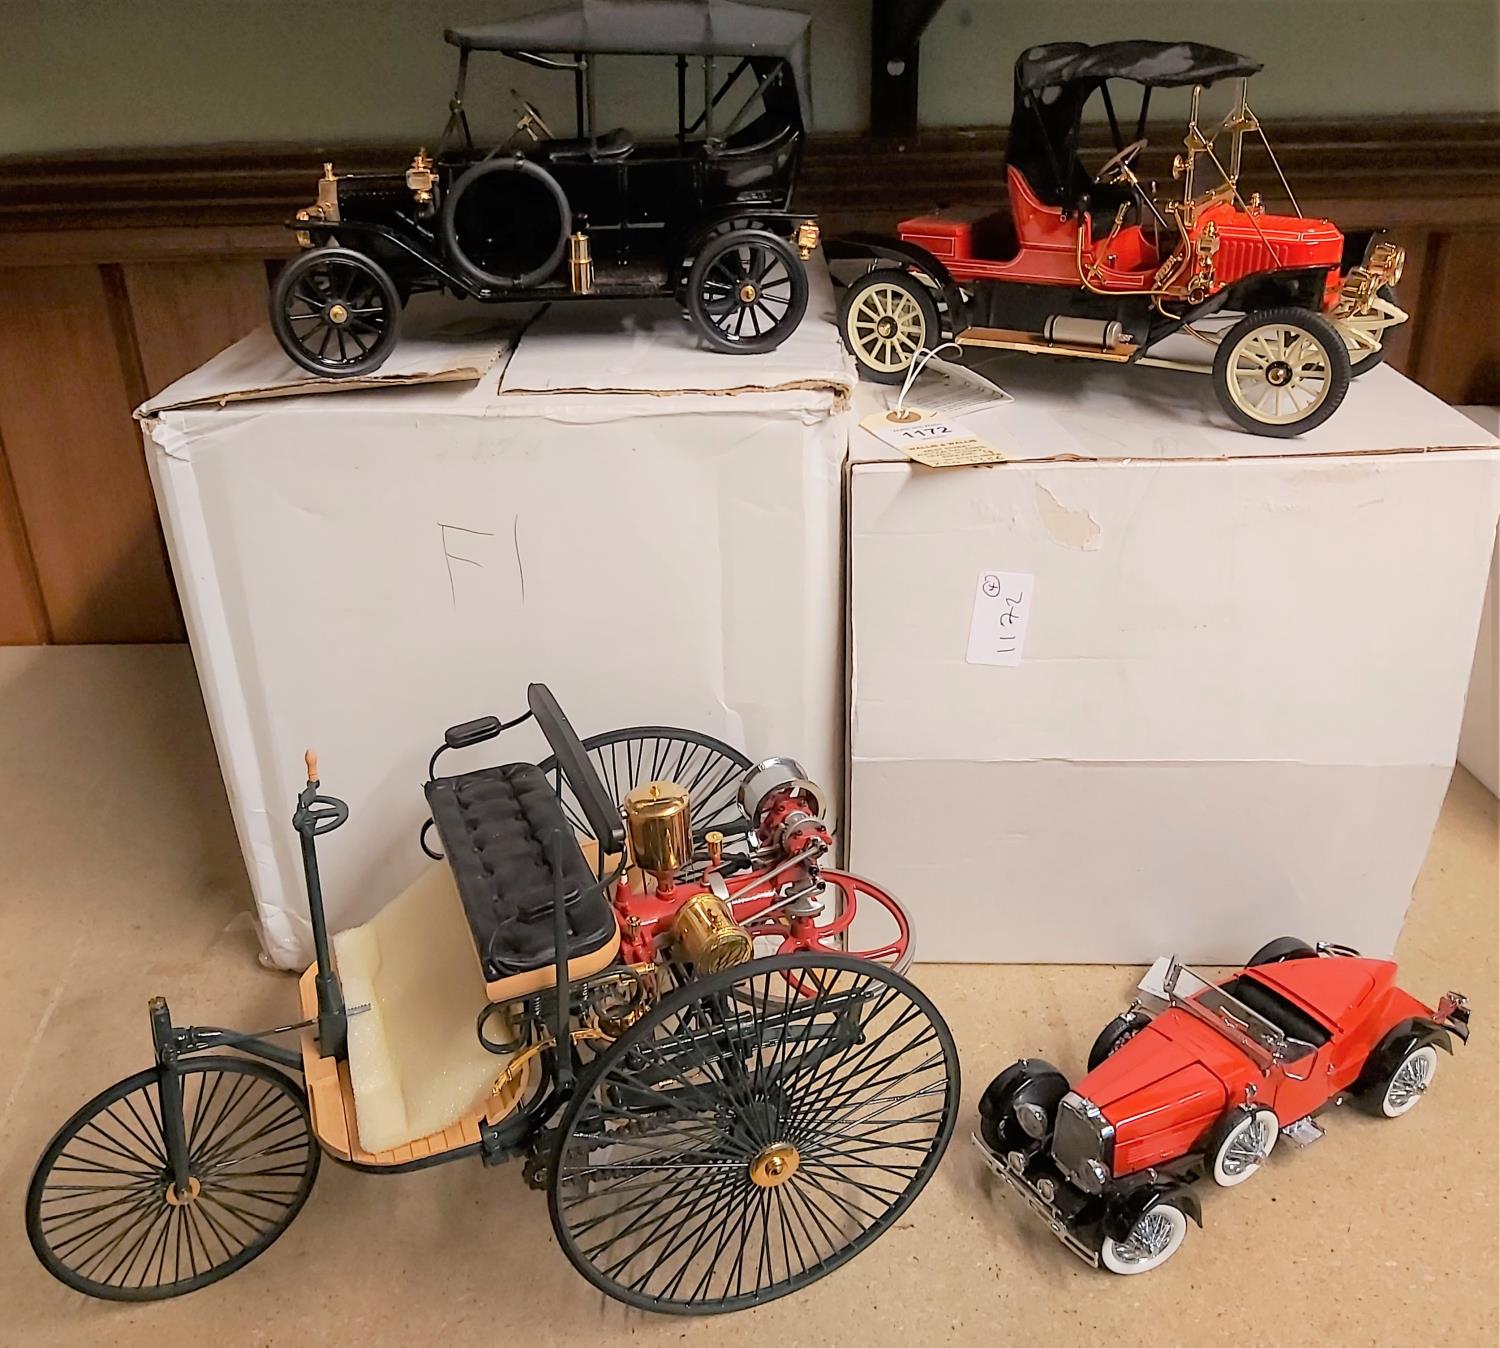 4 Franklin Mint vehicles. 1896 Benz Patent Motorwagen. In red & black. 1911 Stanley Steamer 62